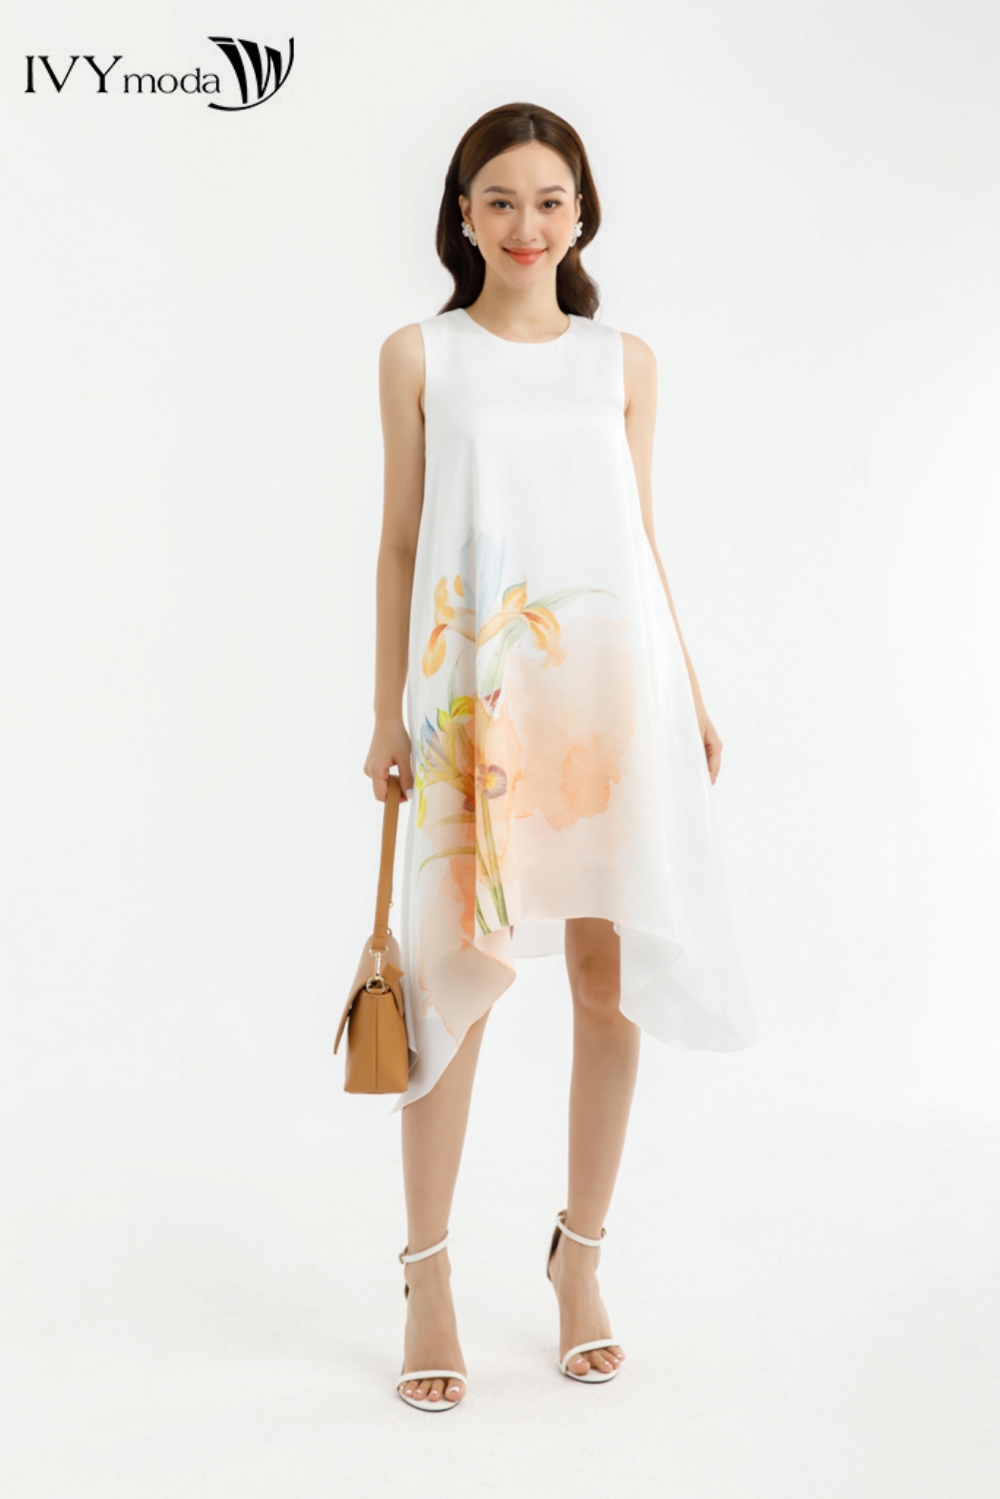 Đầm lụa phối cành hoa - LATIFAH DRESS IVY moda MS 48M7430 | Lazada.vn